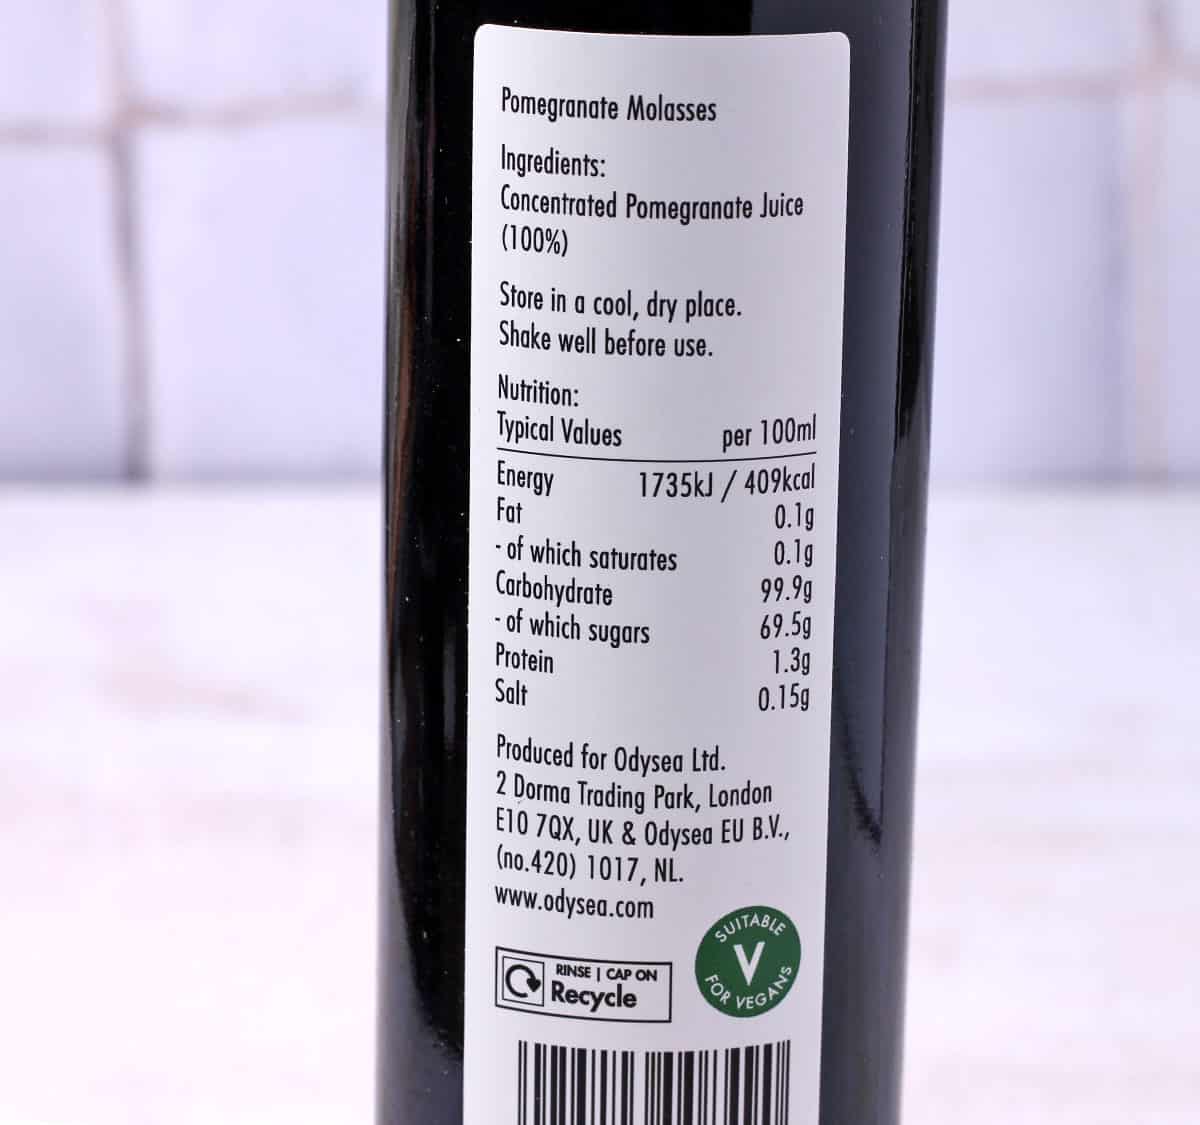 A consumer label for pomegranate molasses.